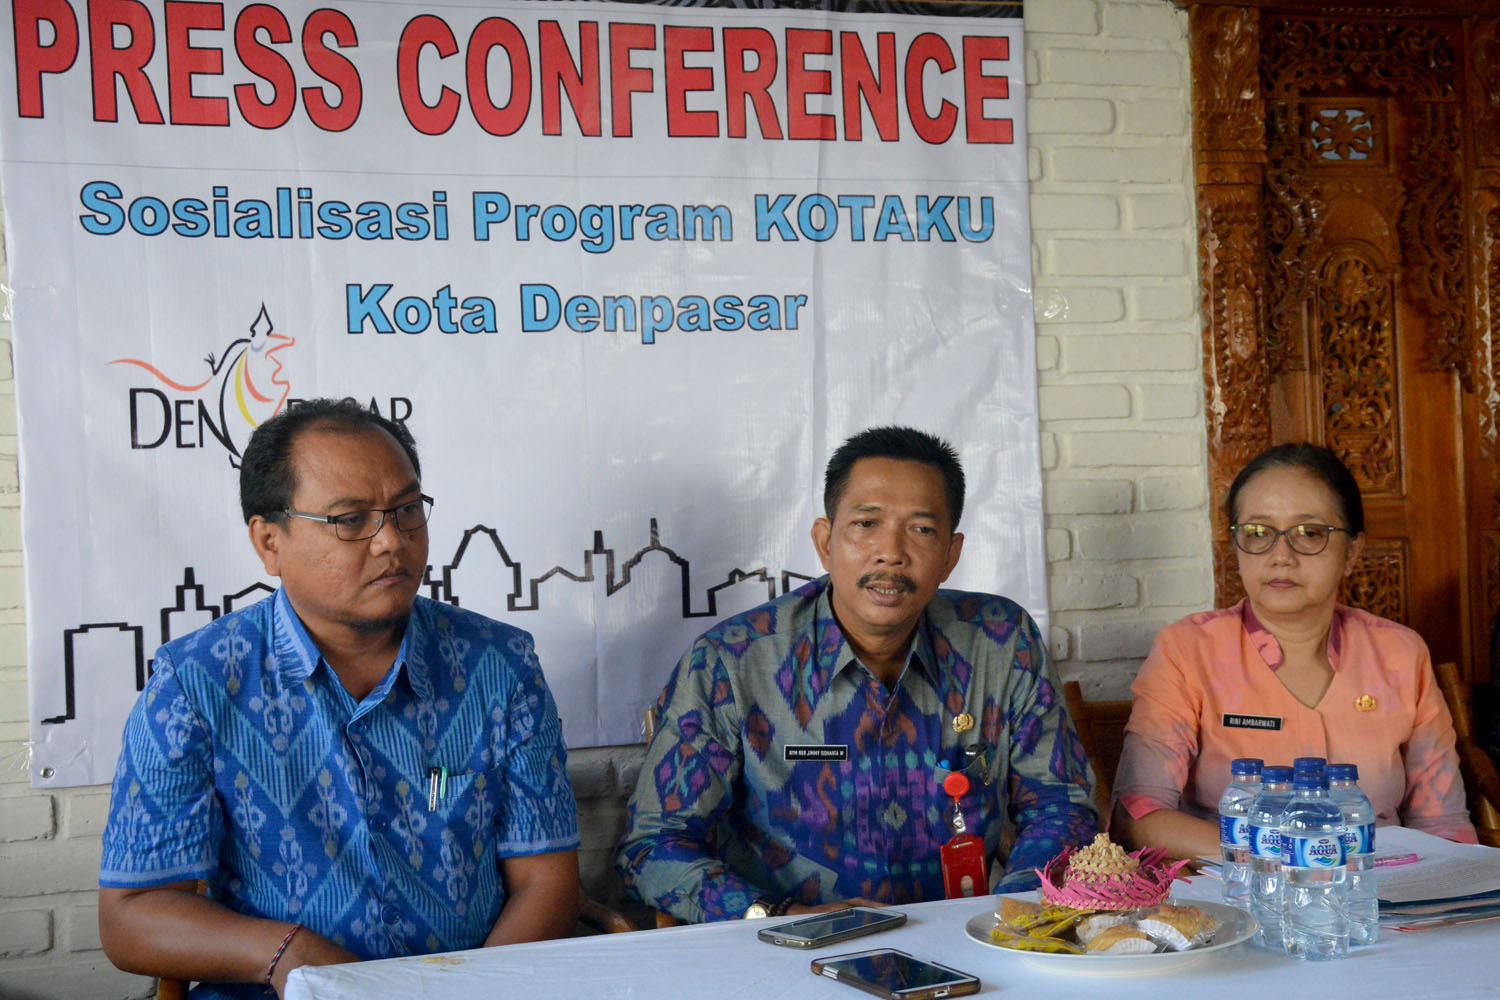 Sosialisasi dan Workshop Program Kota Tanpa Kumuh, Jumat (23/9) di Hotel Puri Kedaton Denpasar.  